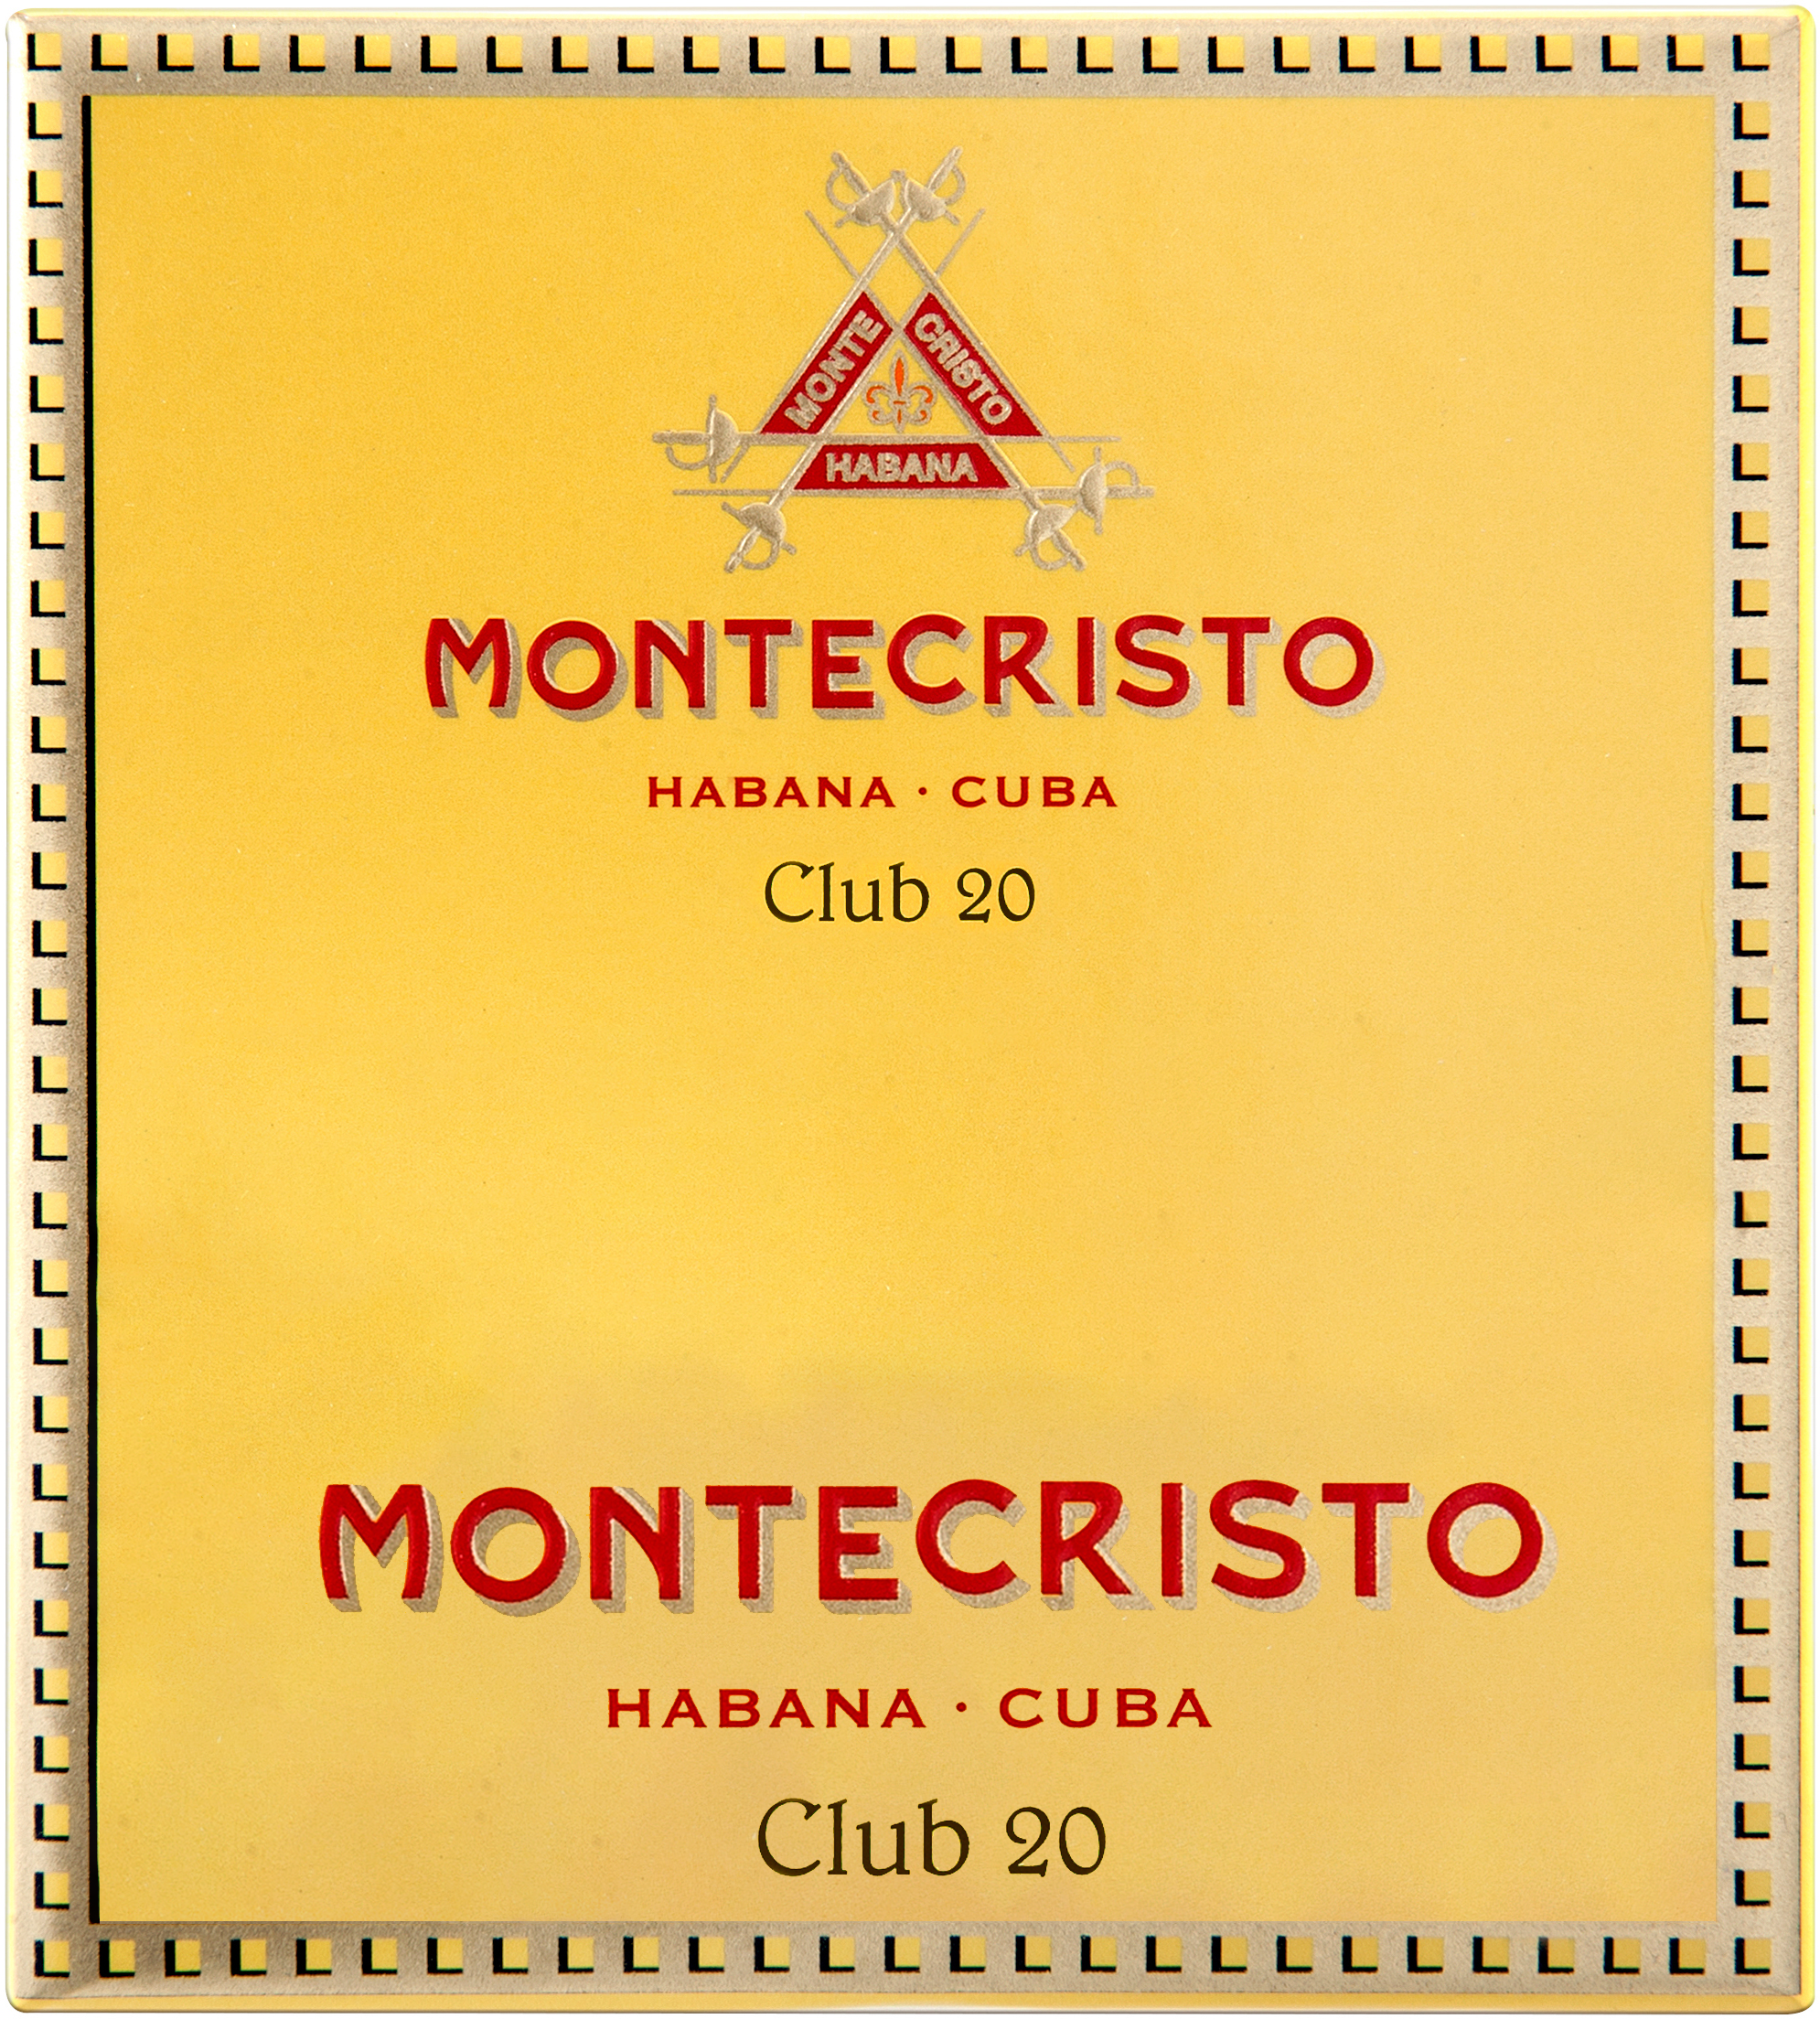 20 نادي مونتيكريستو